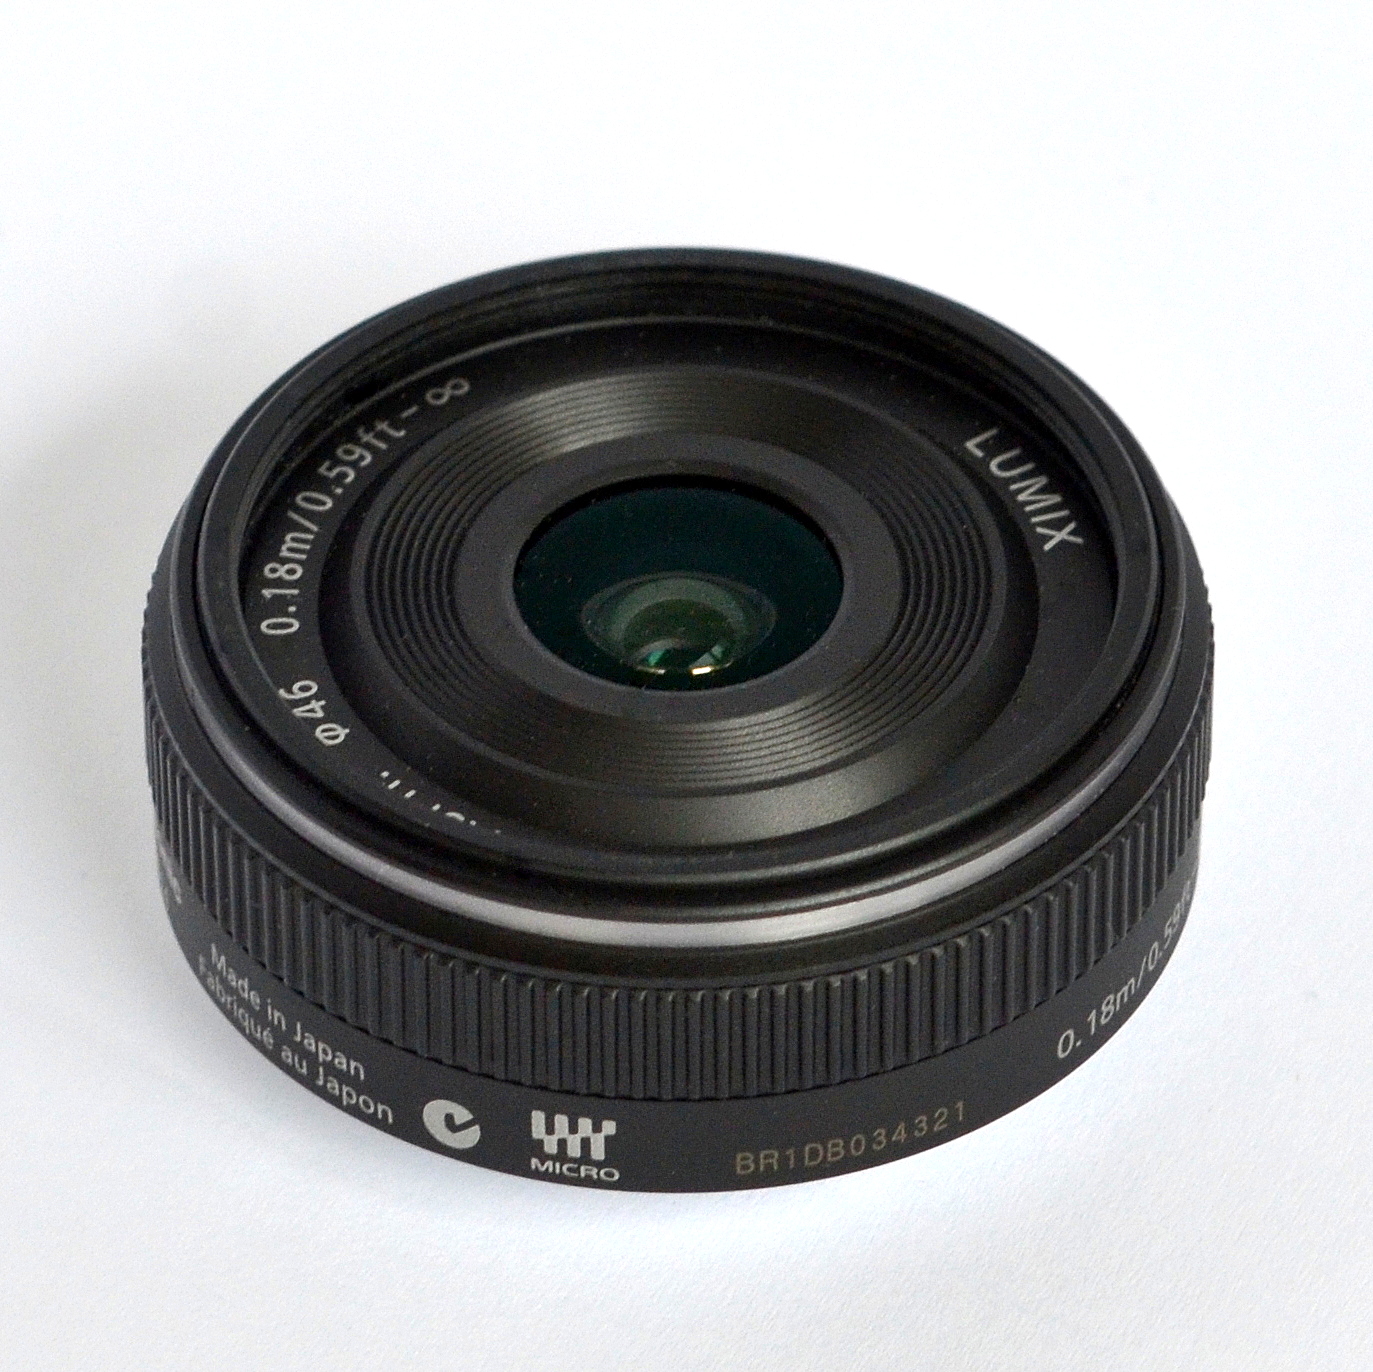 Panasonic Lumix G 14mm lens - Wikipedia